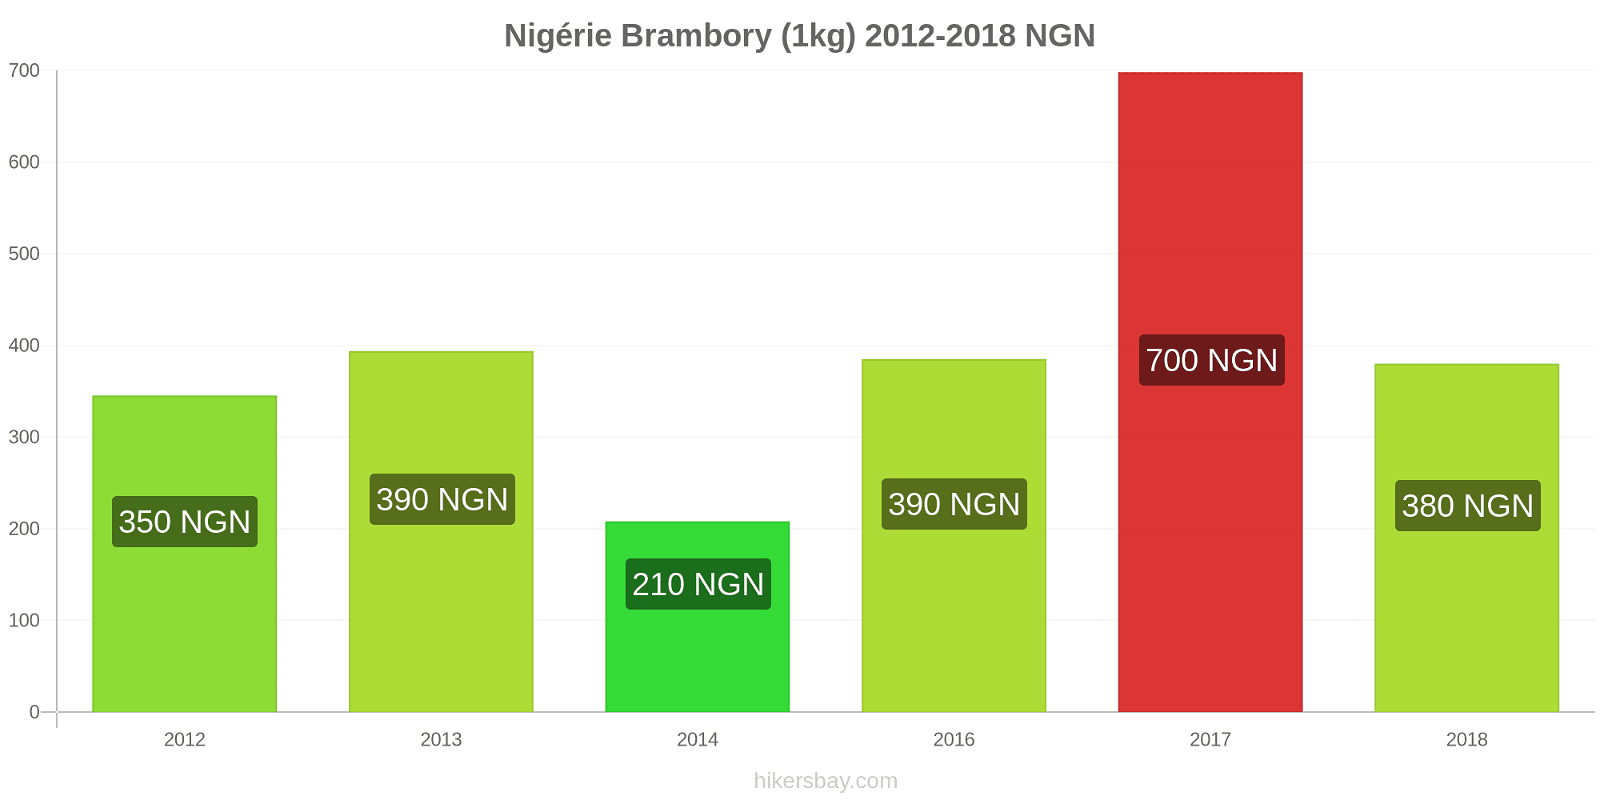 Nigérie změny cen Brambory (1kg) hikersbay.com